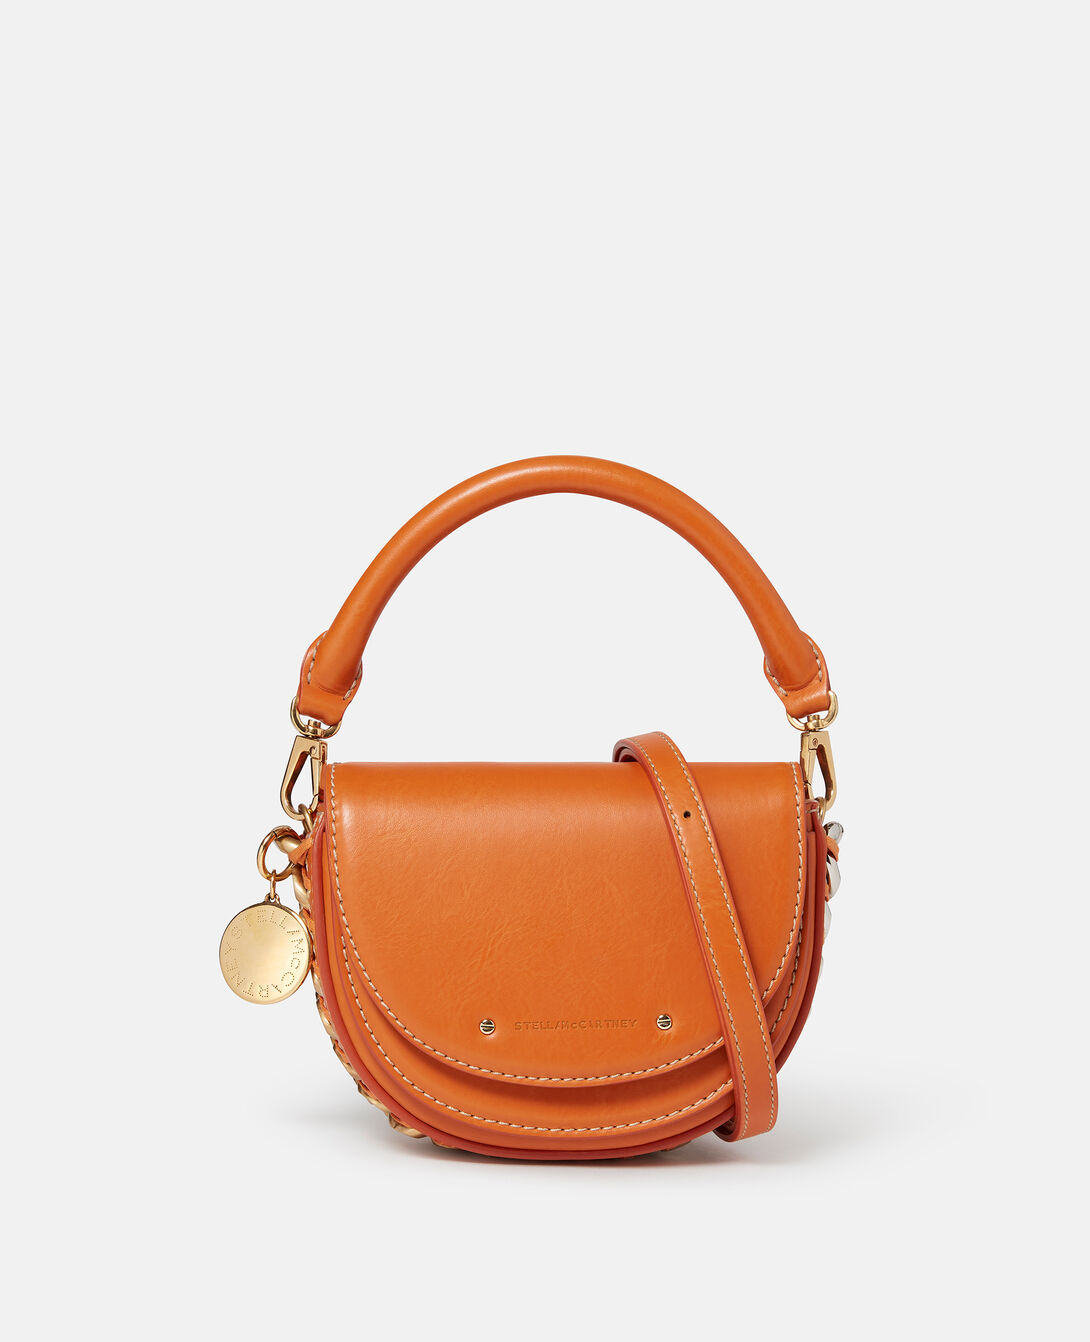 Stella McCartney Medium Frayme Flap Shoulder Bag - Orange